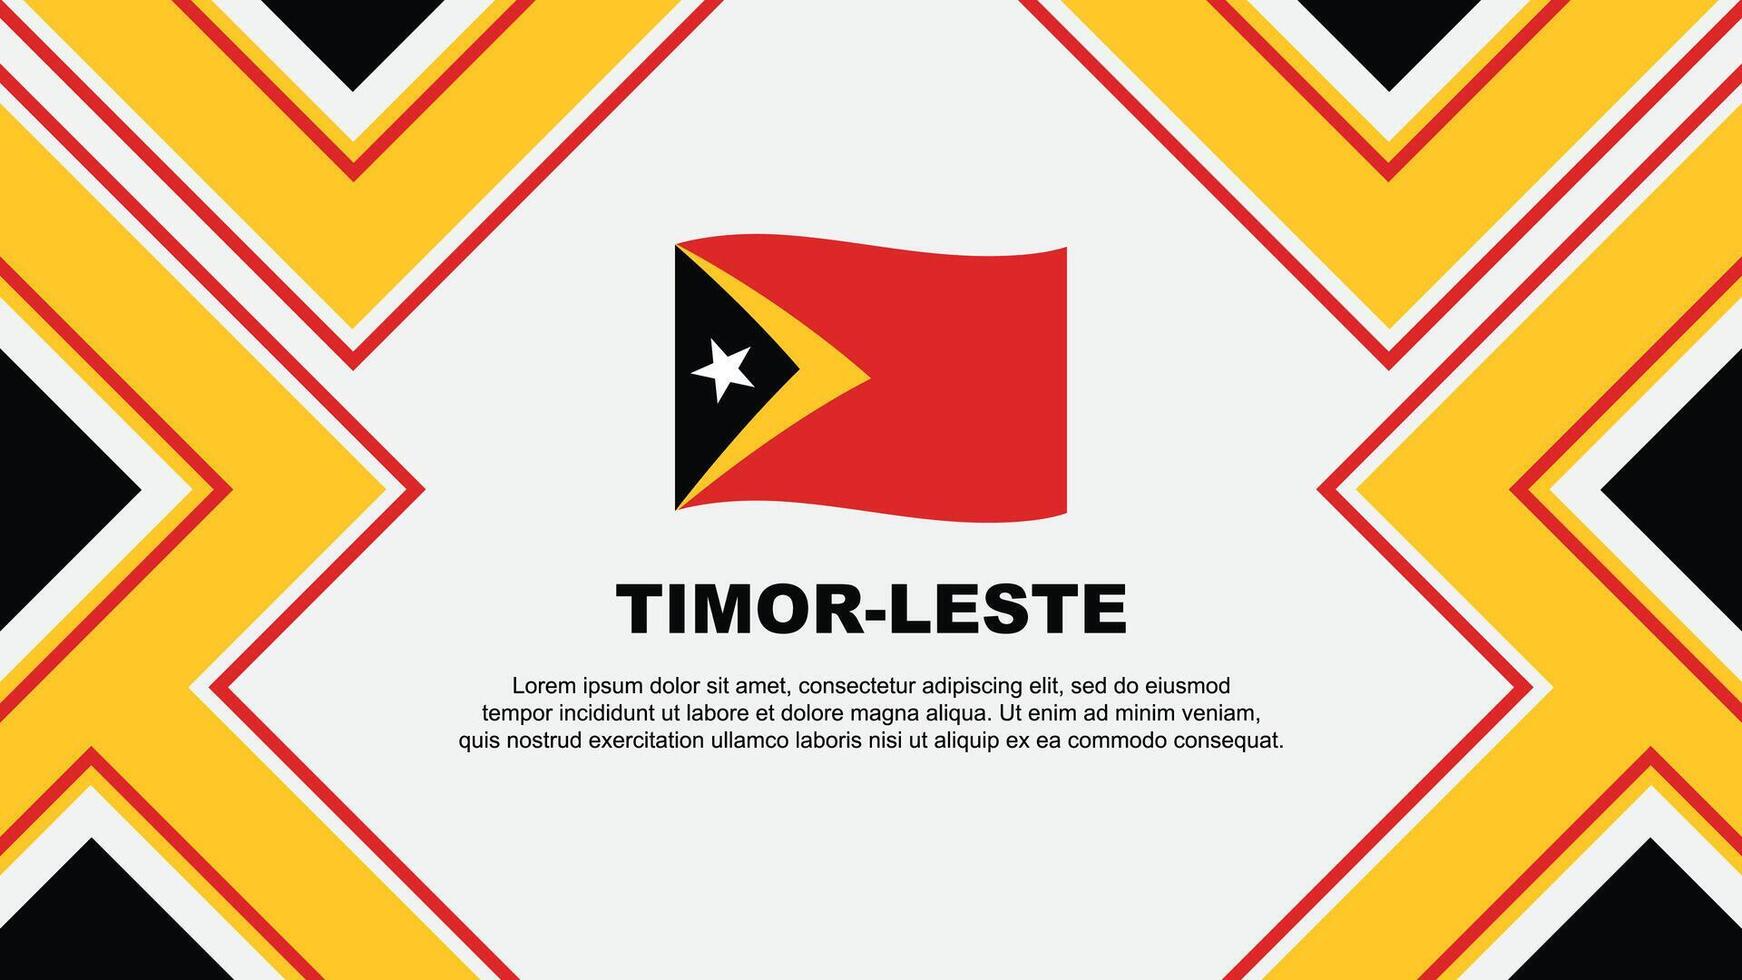 Timor Leste Flag Abstract Background Design Template. Timor Leste Independence Day Banner Wallpaper Vector Illustration. Timor Leste Vector